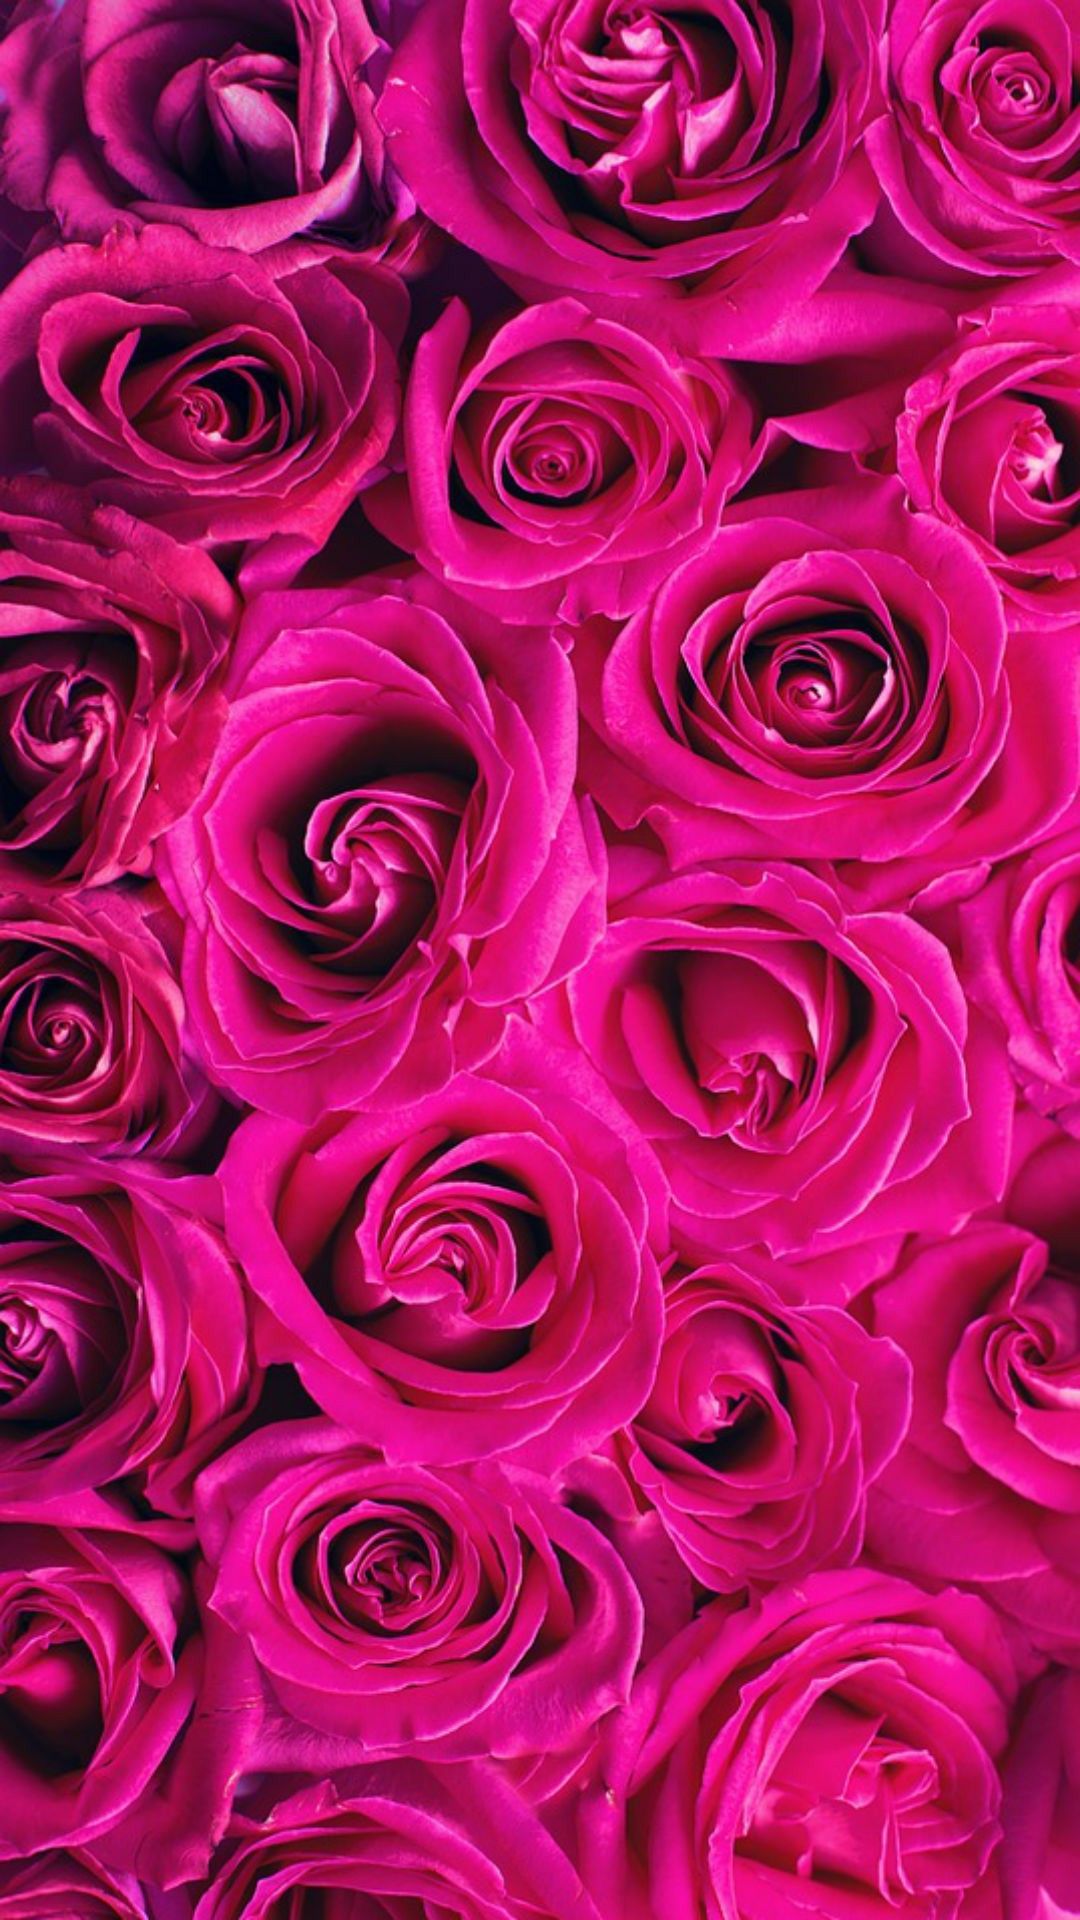 Hình nền hoa đậu biếc hồng nóng bỏng sẽ giúp cho chiếc điện thoại của bạn nổi bật hơn trong giới trẻ. Sự hòa quyện giữa màu hồng và màu tím đậm đã tạo ra một tác phẩm hoa hồng nóng bỏng không kém phần quyến rũ.